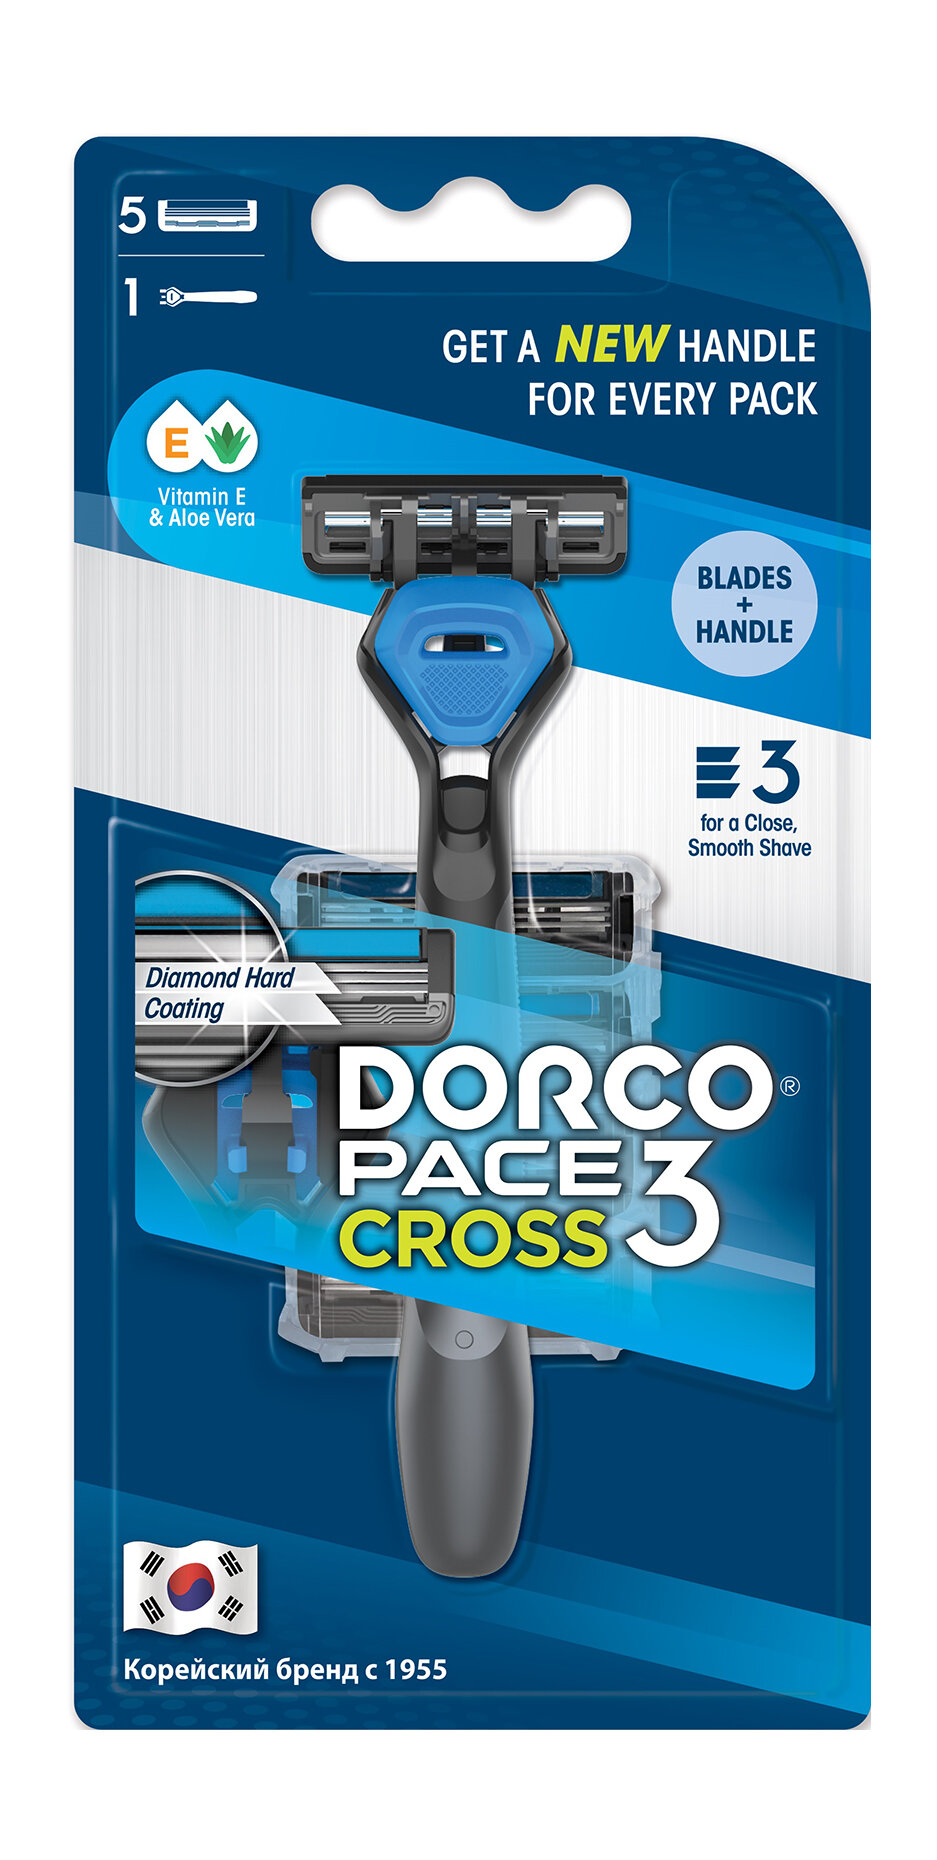 DORCO Станок для бритья Dorco Pace 3 Cross 5 сменных кассет